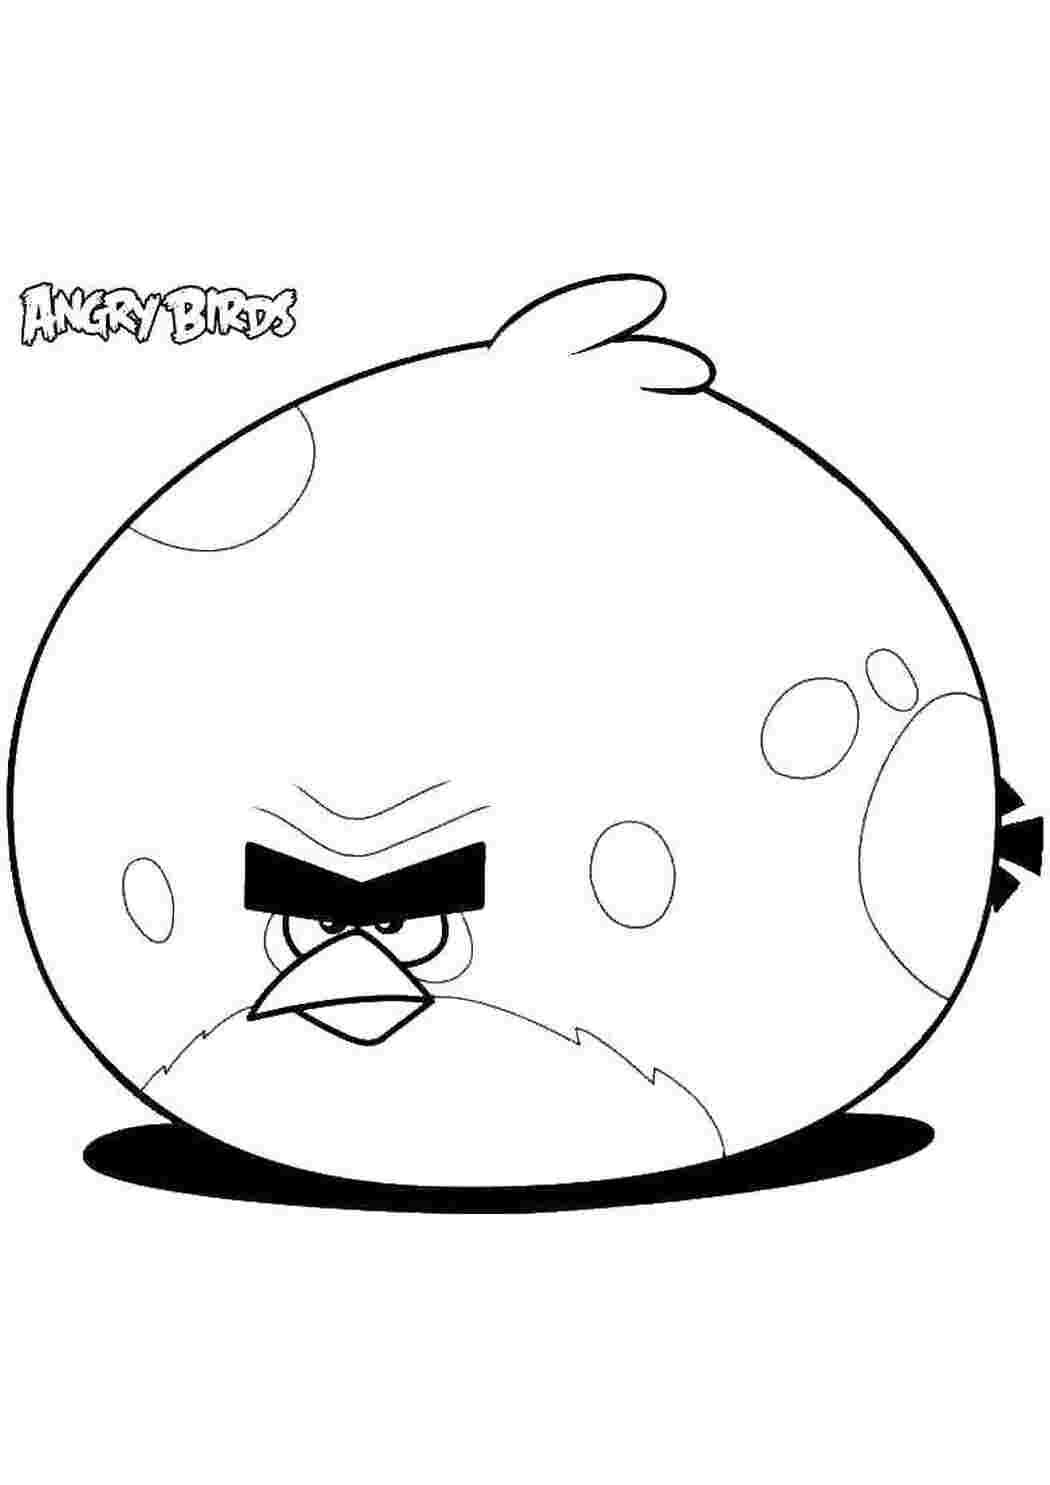 Распечатать на А4 и скачать все раскраски из категории «Angry Birds»